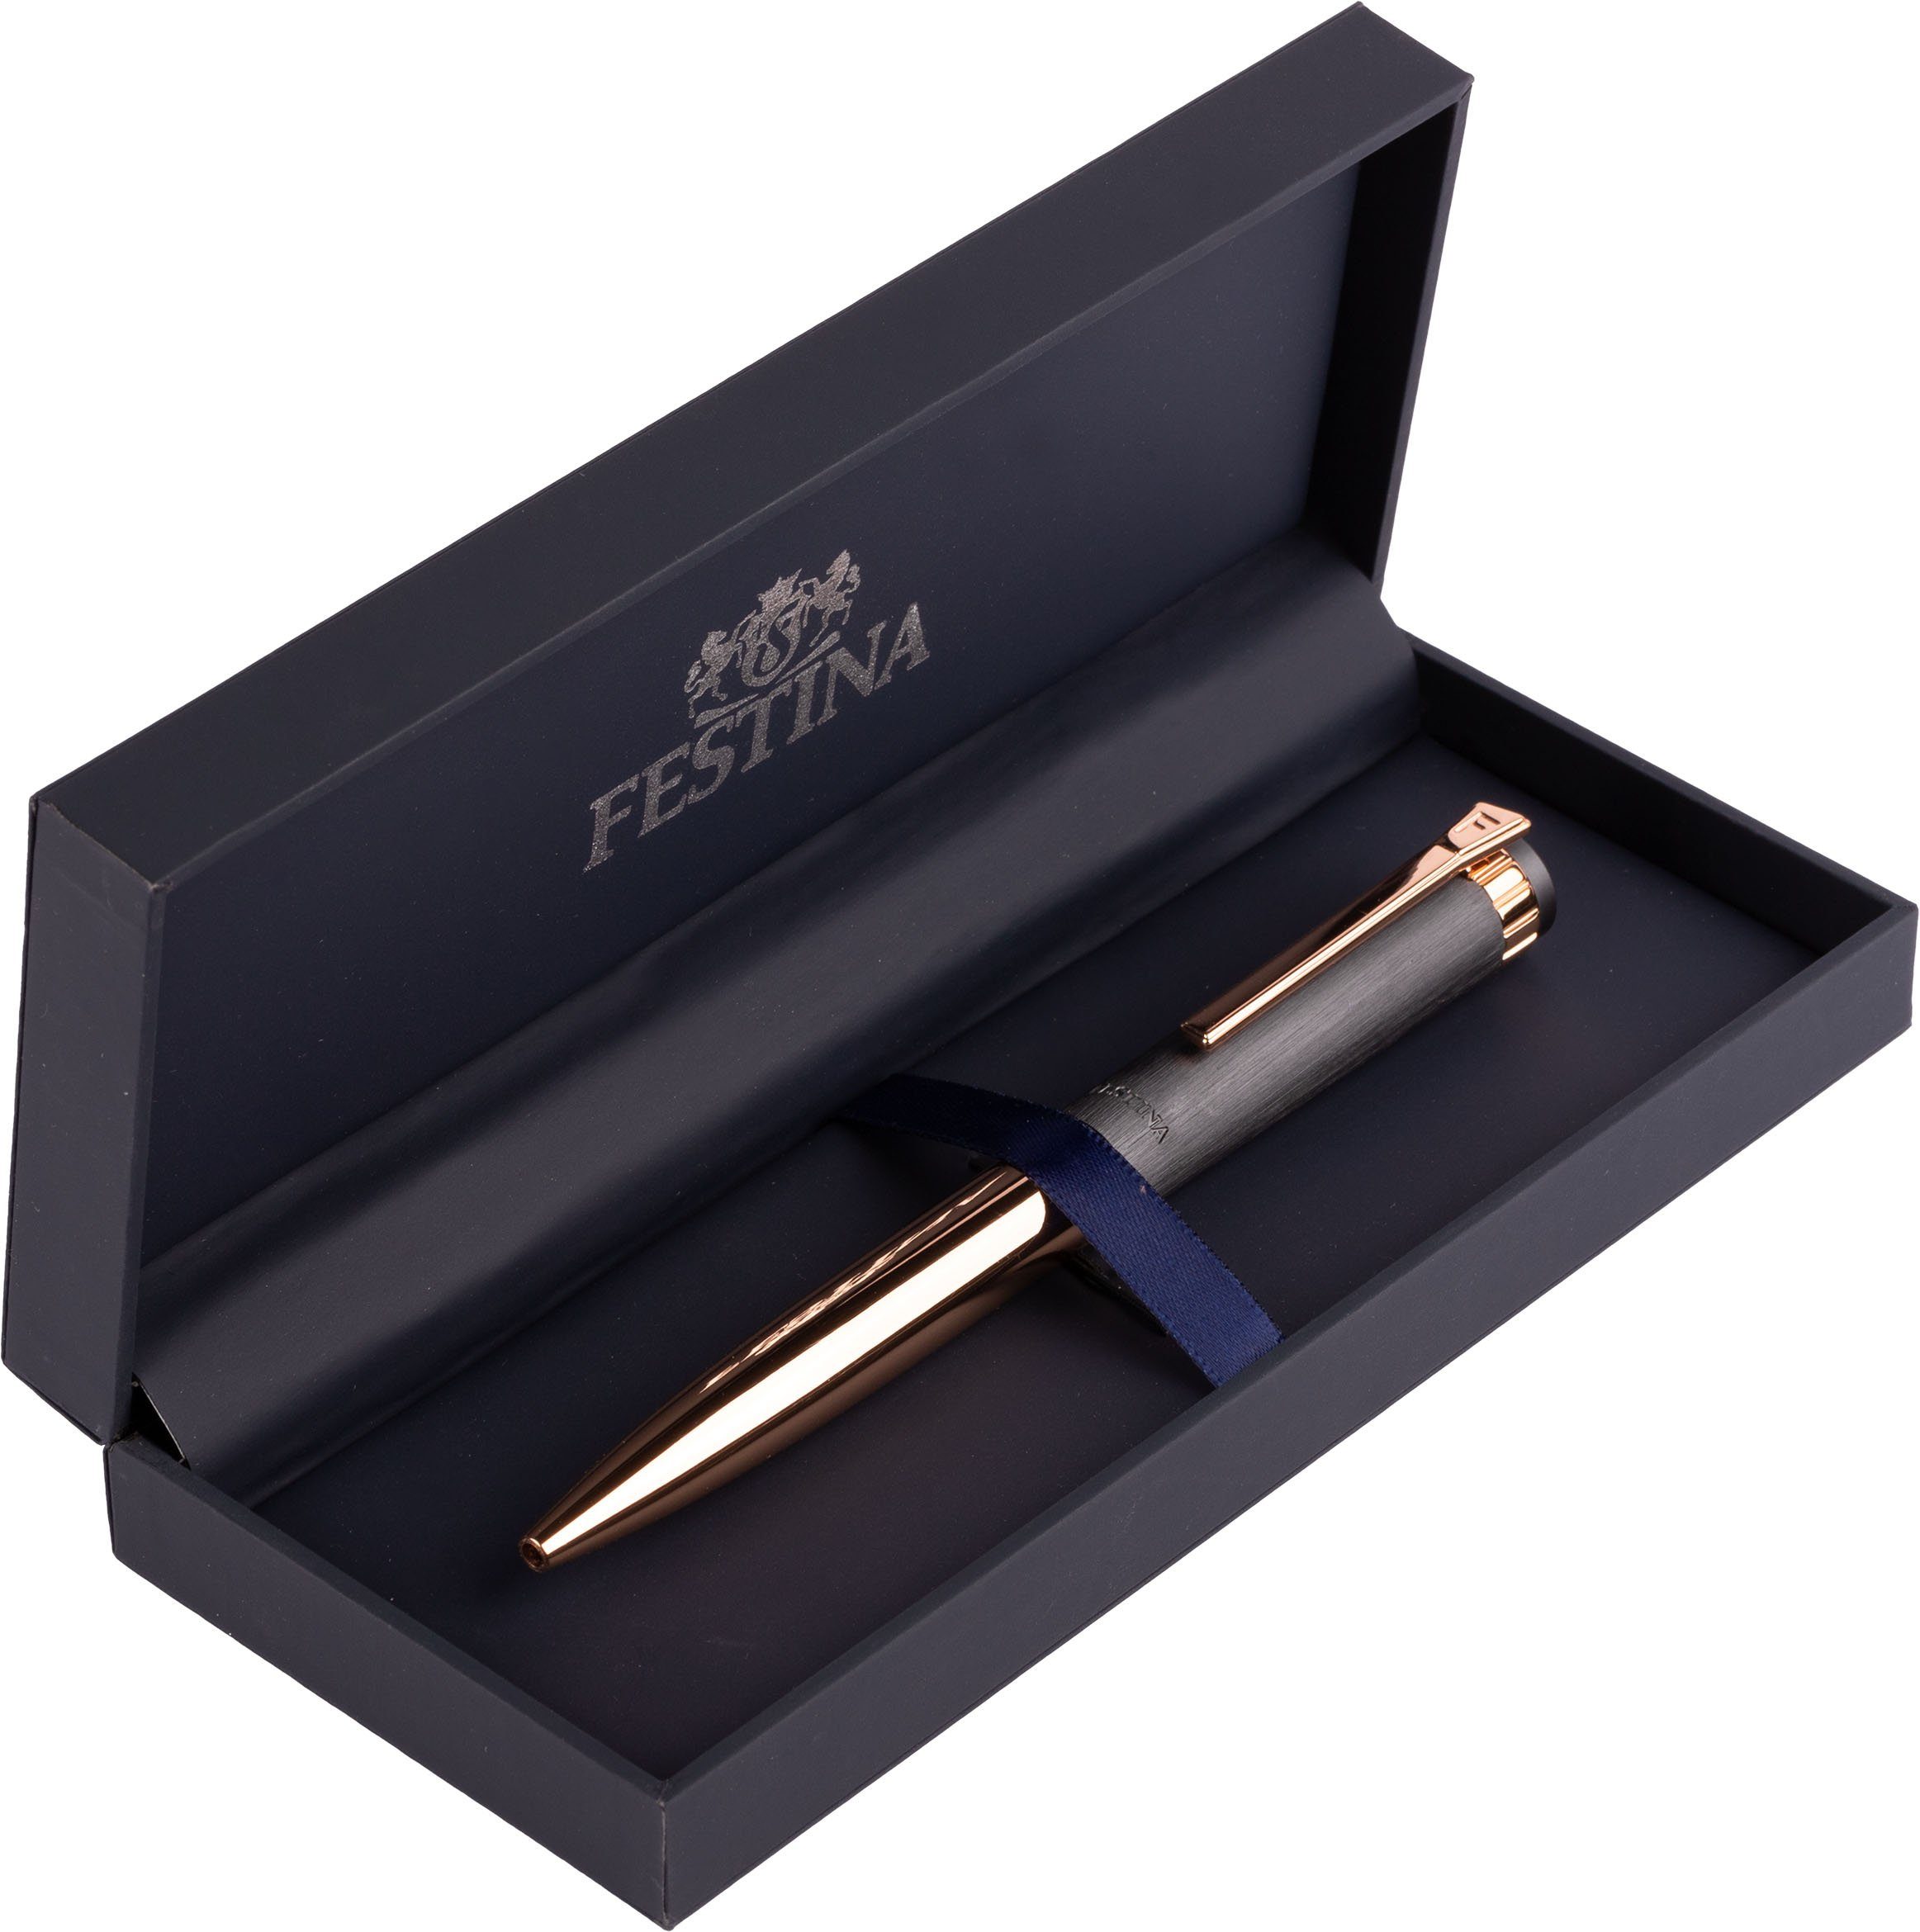 Prestige, Festina auch Geschenk als inklusive Etui, FWS4107/D, ideal Kugelschreiber